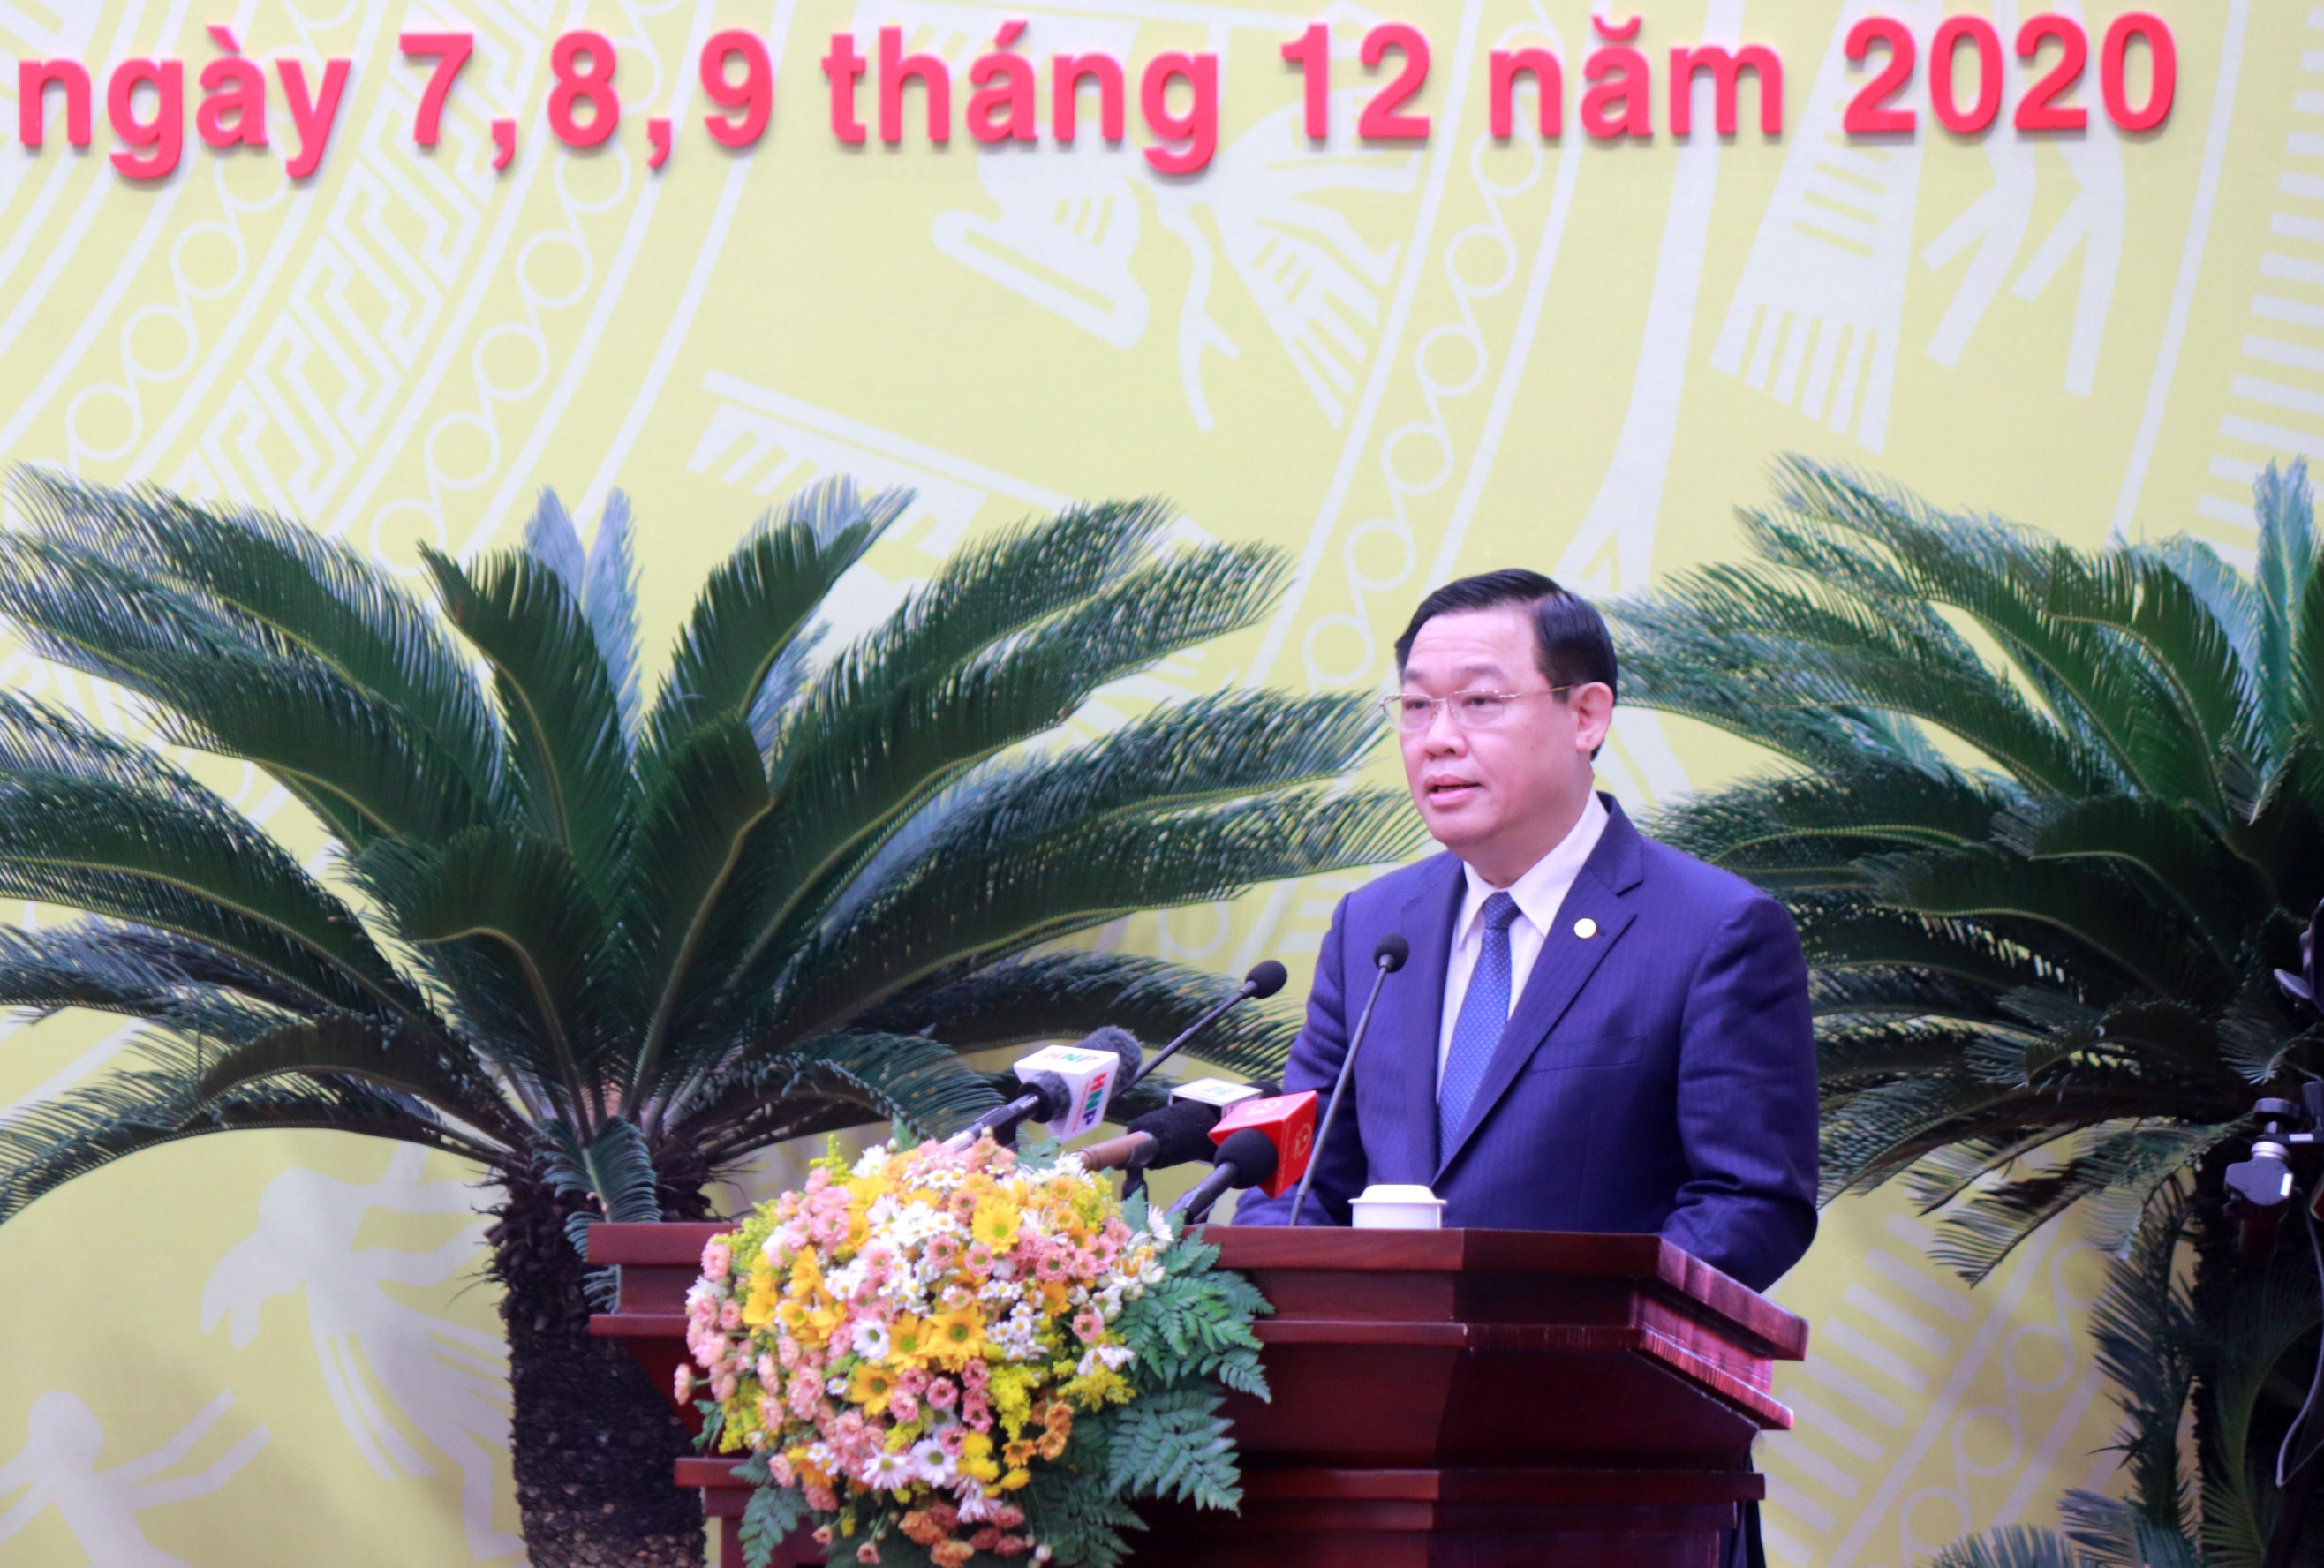 Bí thư Thành ủy Hà Nội Vương Đình Huệ: Tạo những chuyển biến căn bản trên mọi lĩnh vực ngay trong năm 2021